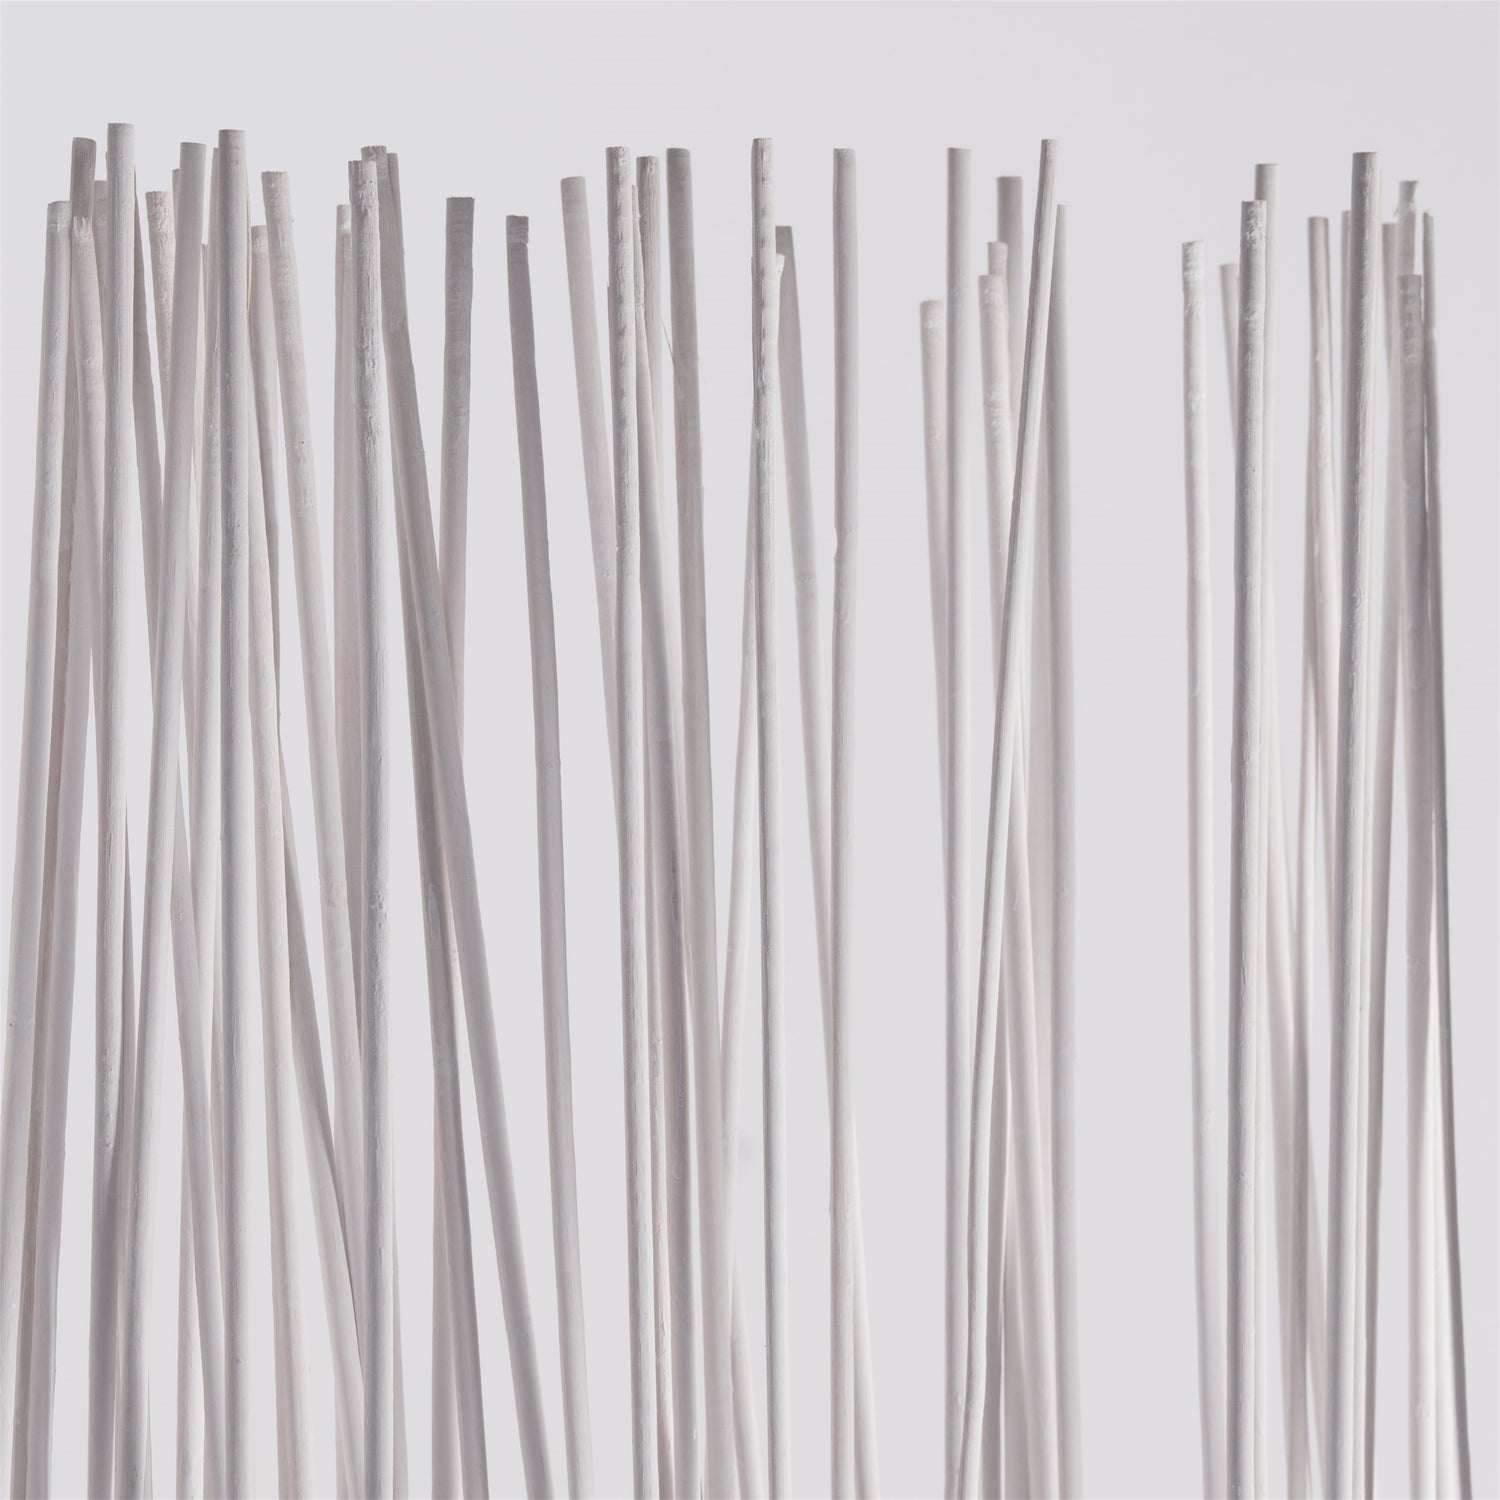 RAUMTEILER "SPIKE" | 170 cm, Weiden | Natur Paravent, Sichtschutz